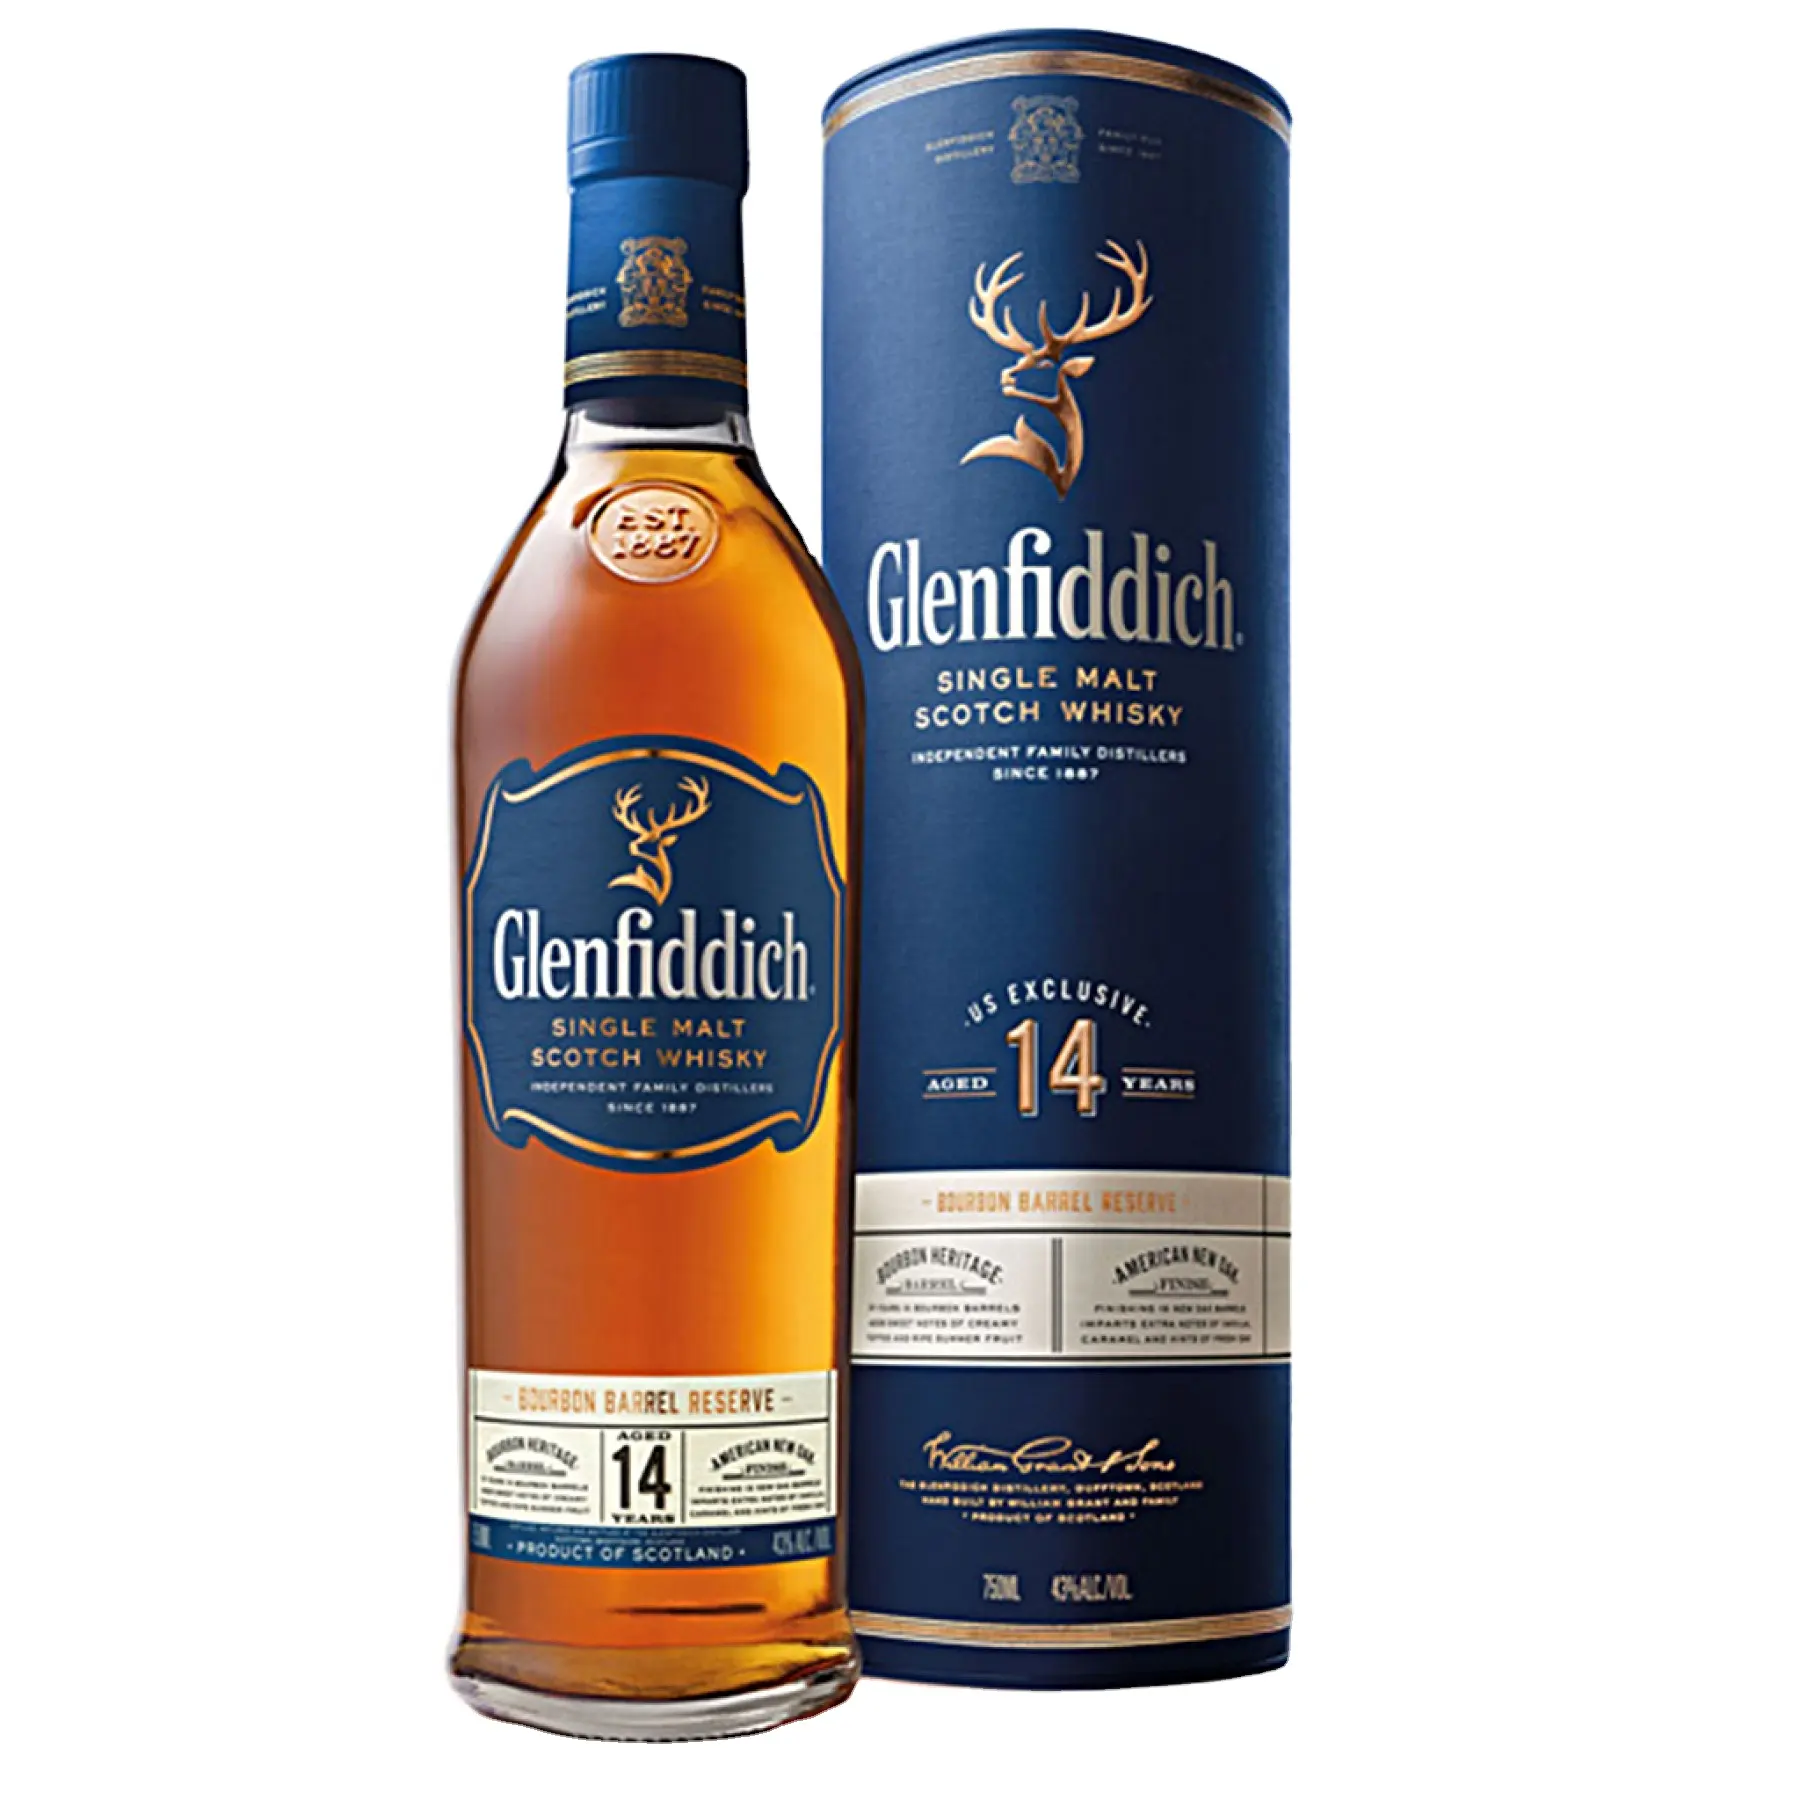 wholesale Glenfiddich Scotch Whisky 12YO, 26YO